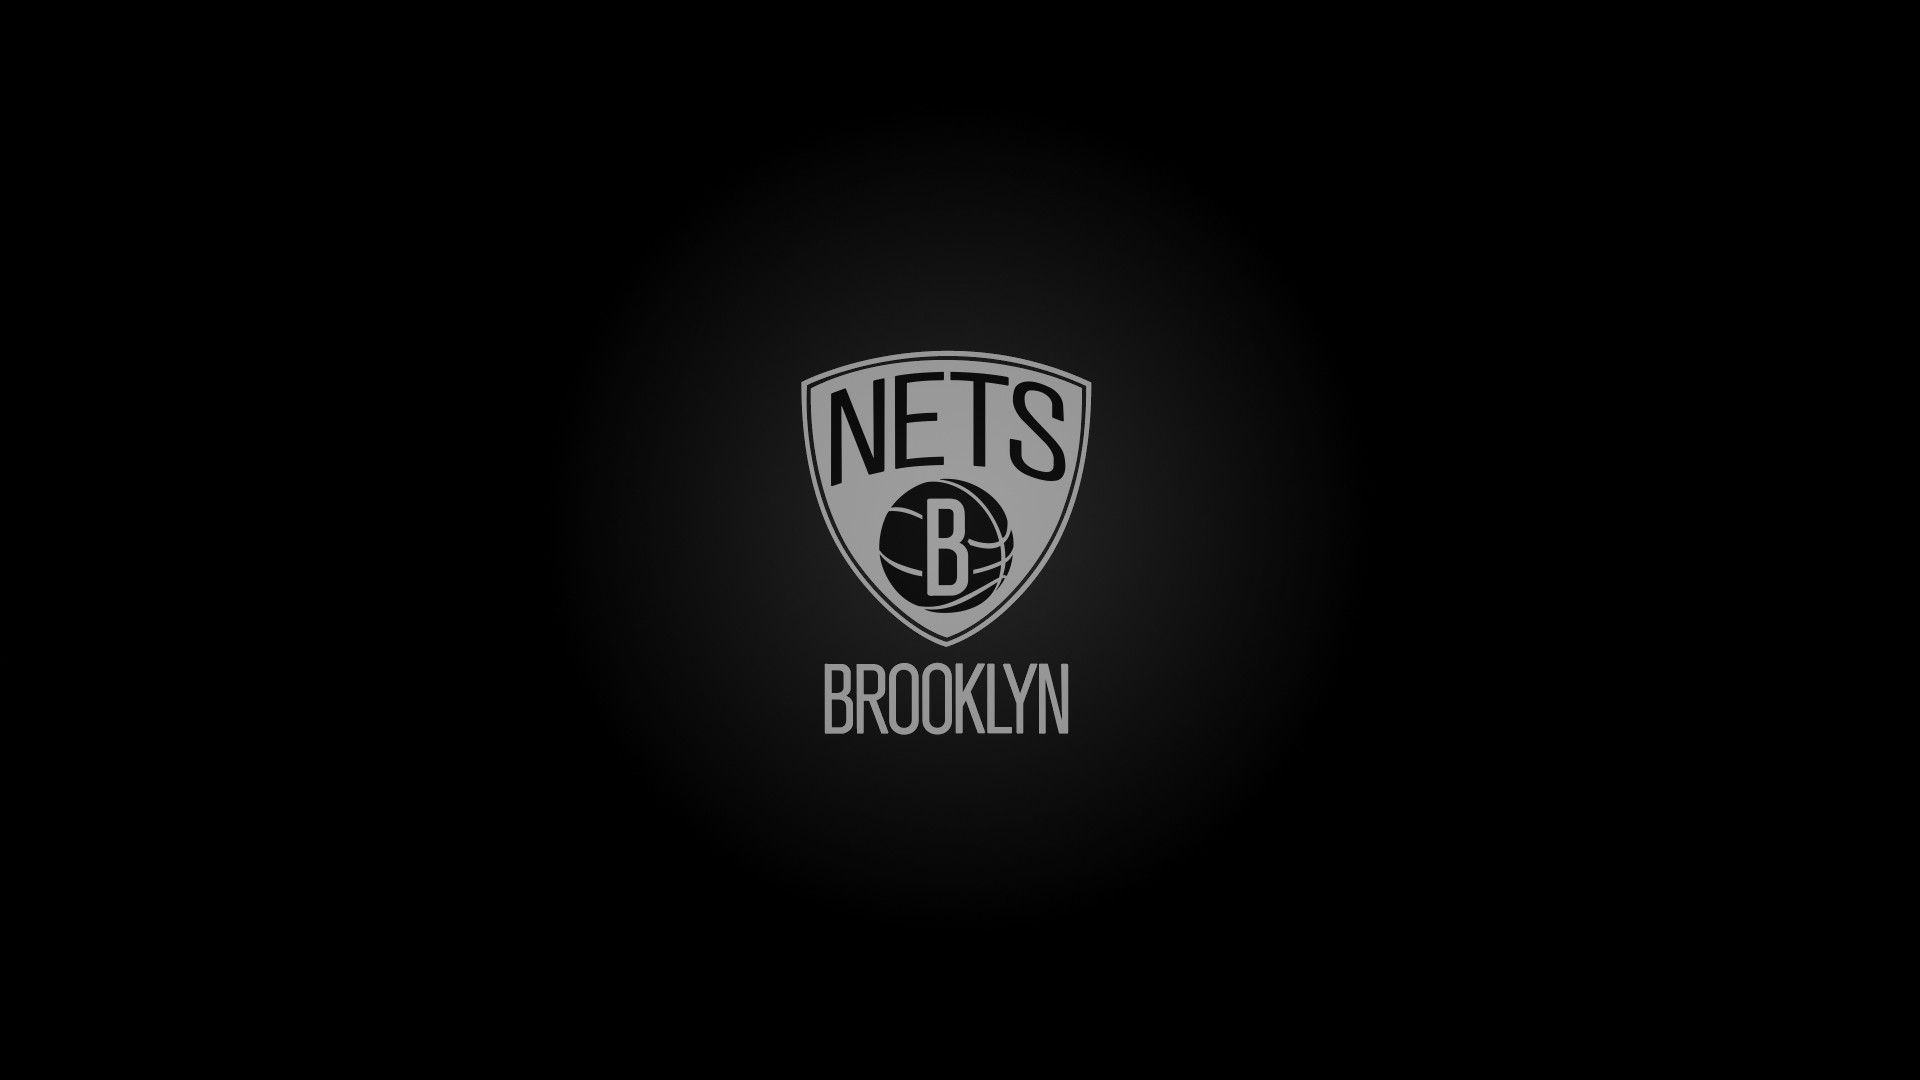 Windows Wallpaper Brooklyn Nets Basketball Wallpaper